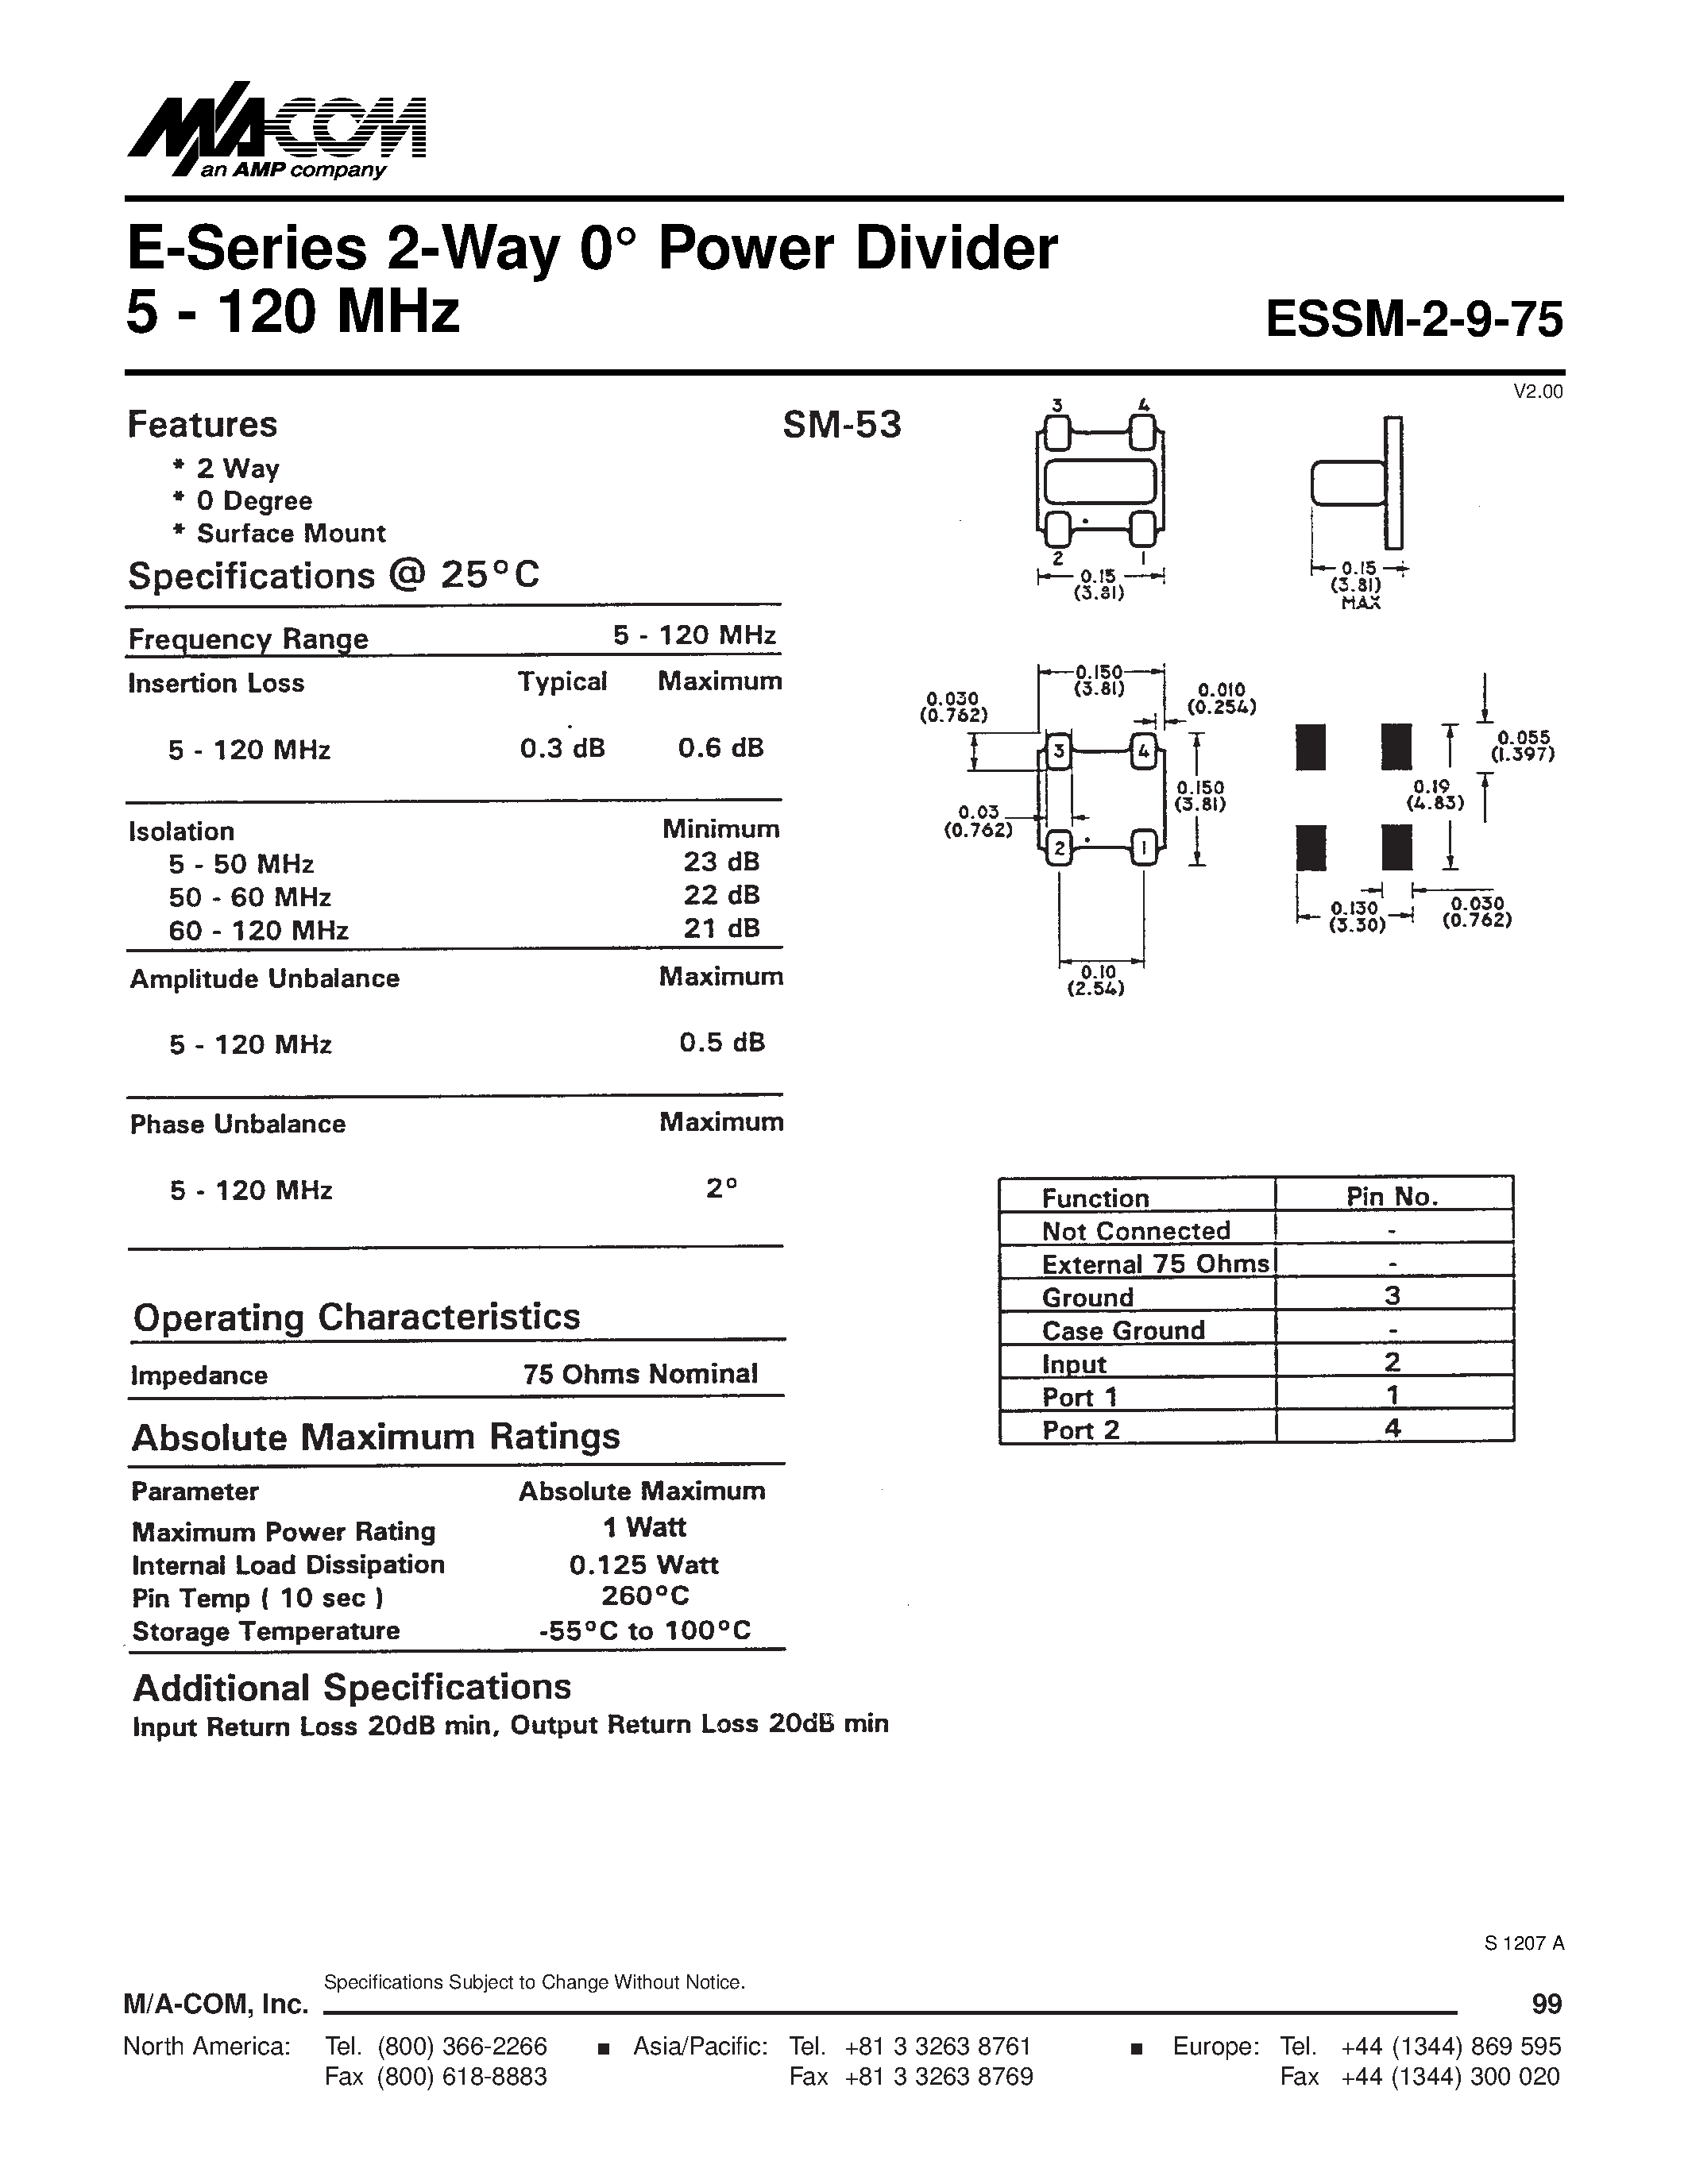 Datasheet ESSM-2-9-75 - E-Series 2-Way 0 Power Divider 5 - 120 MHz page 1